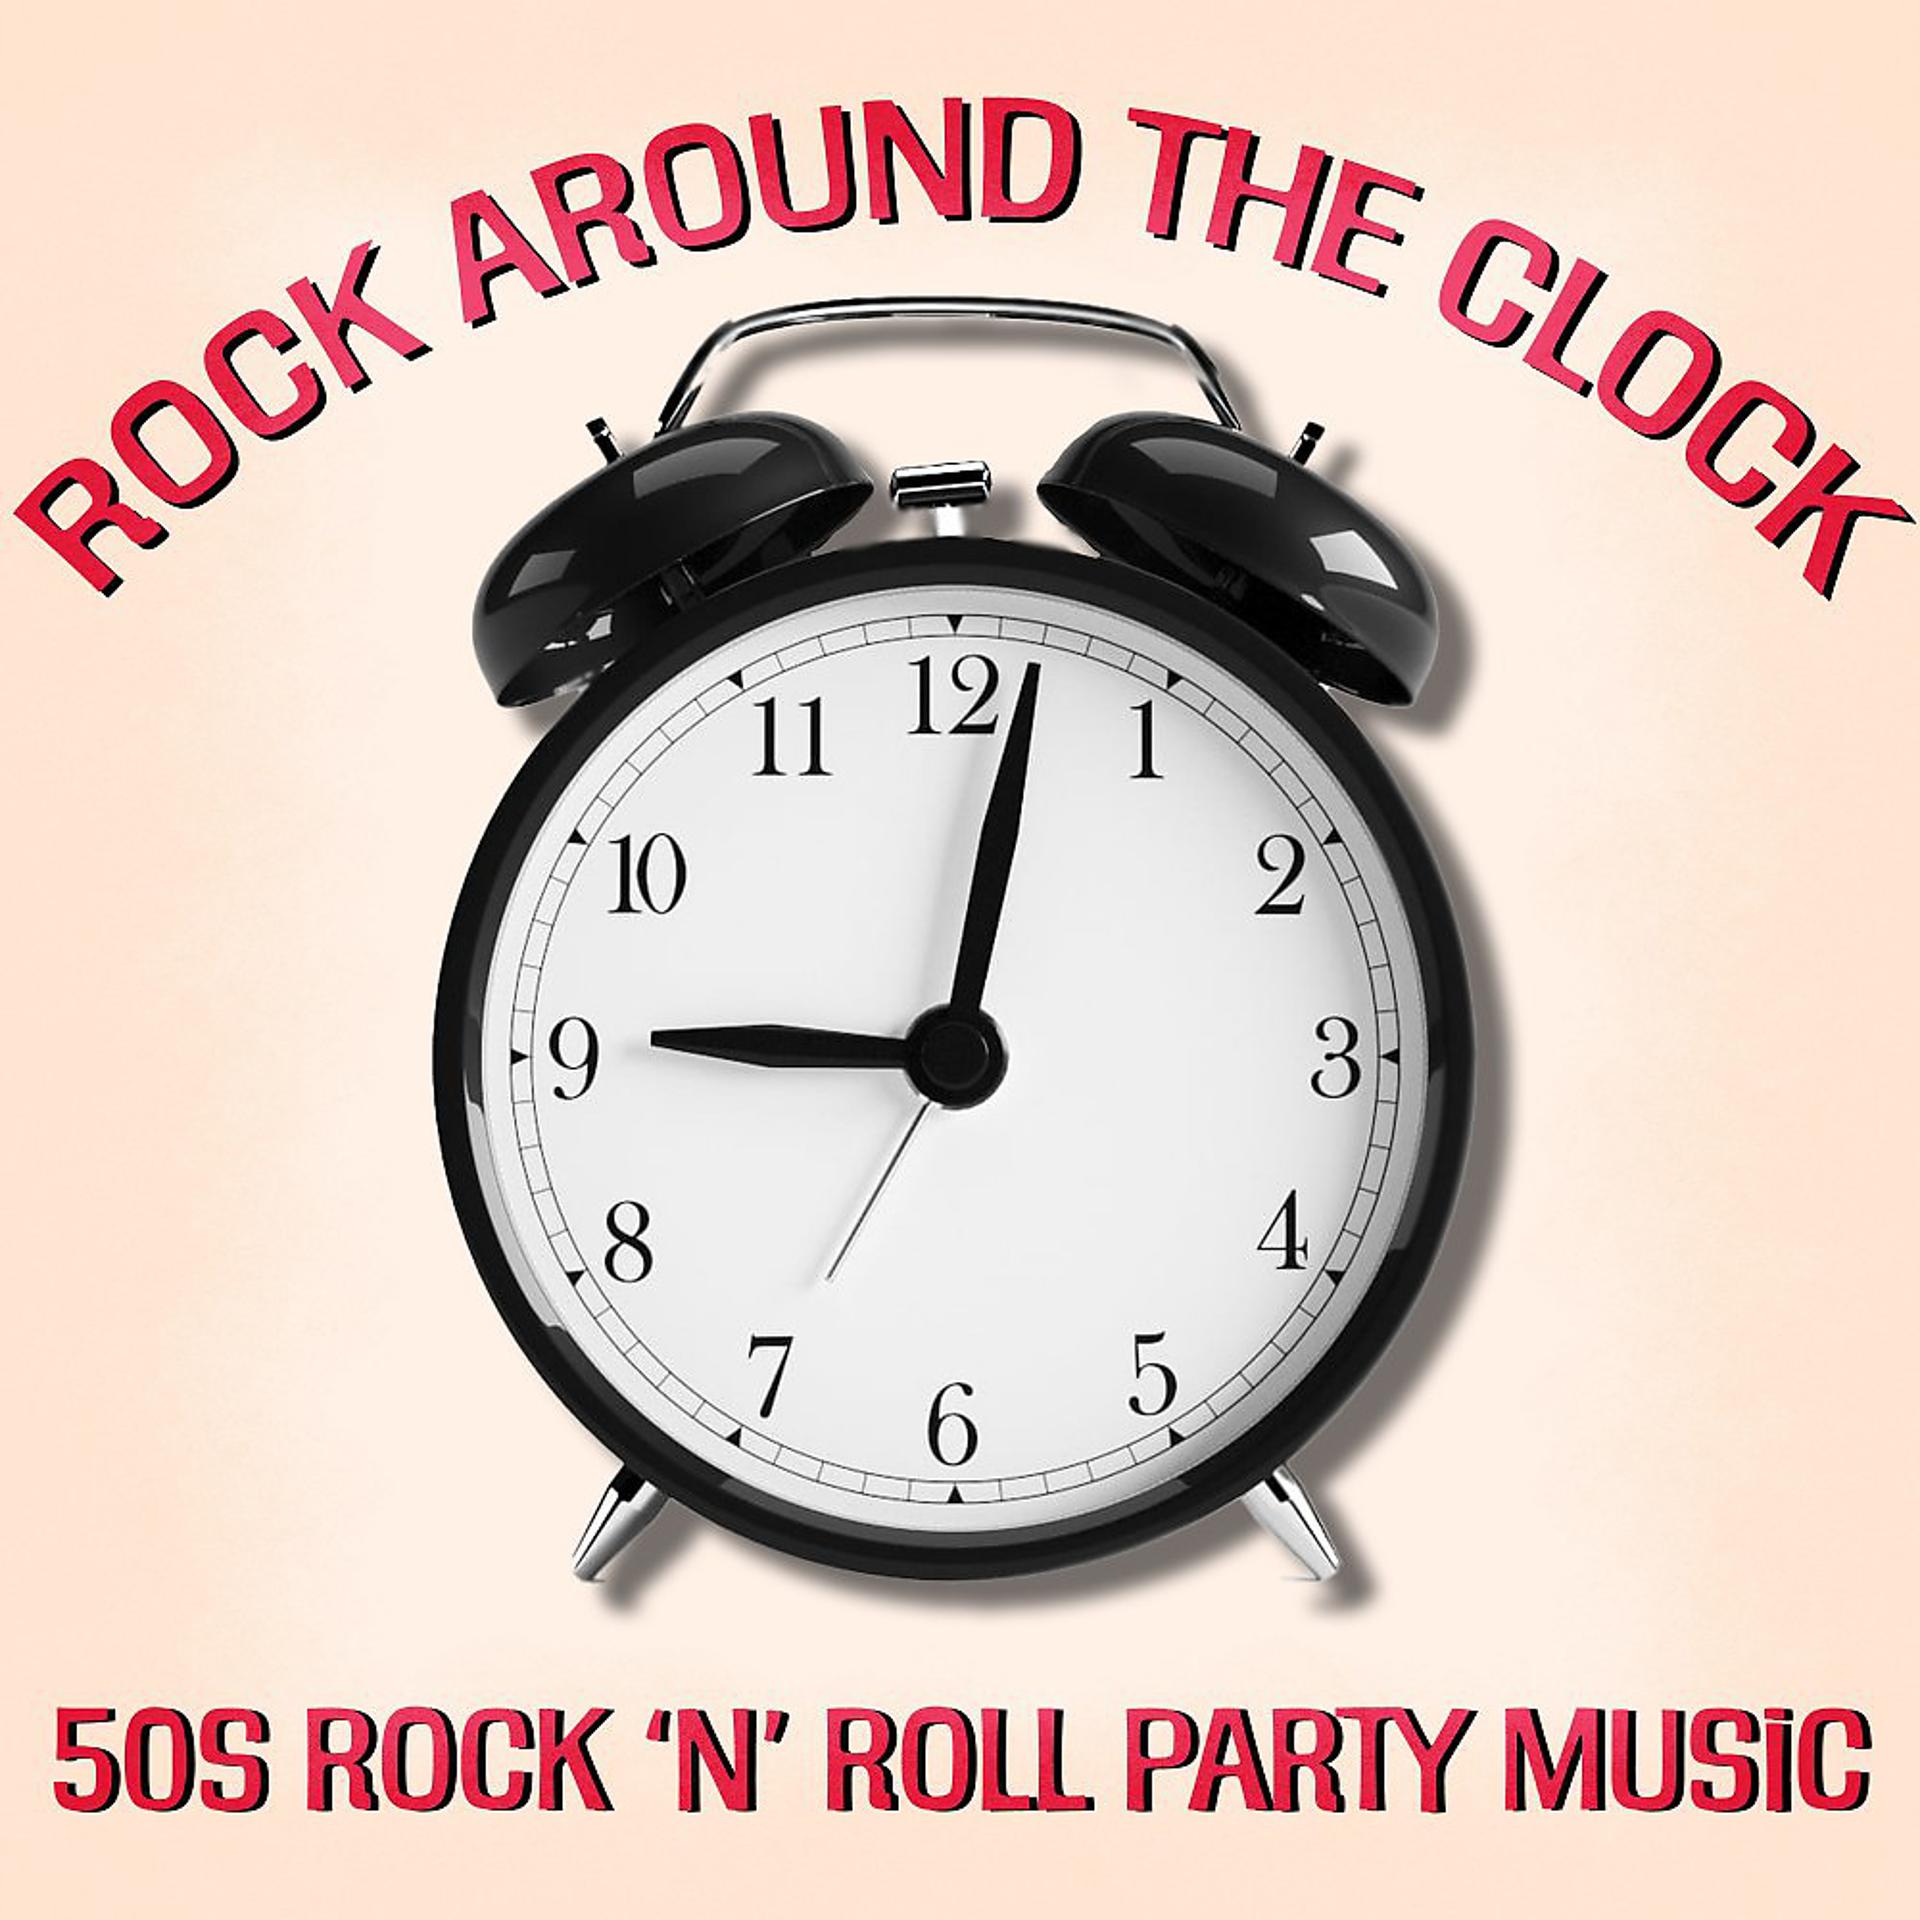 Постер альбома Rock Around the Clock